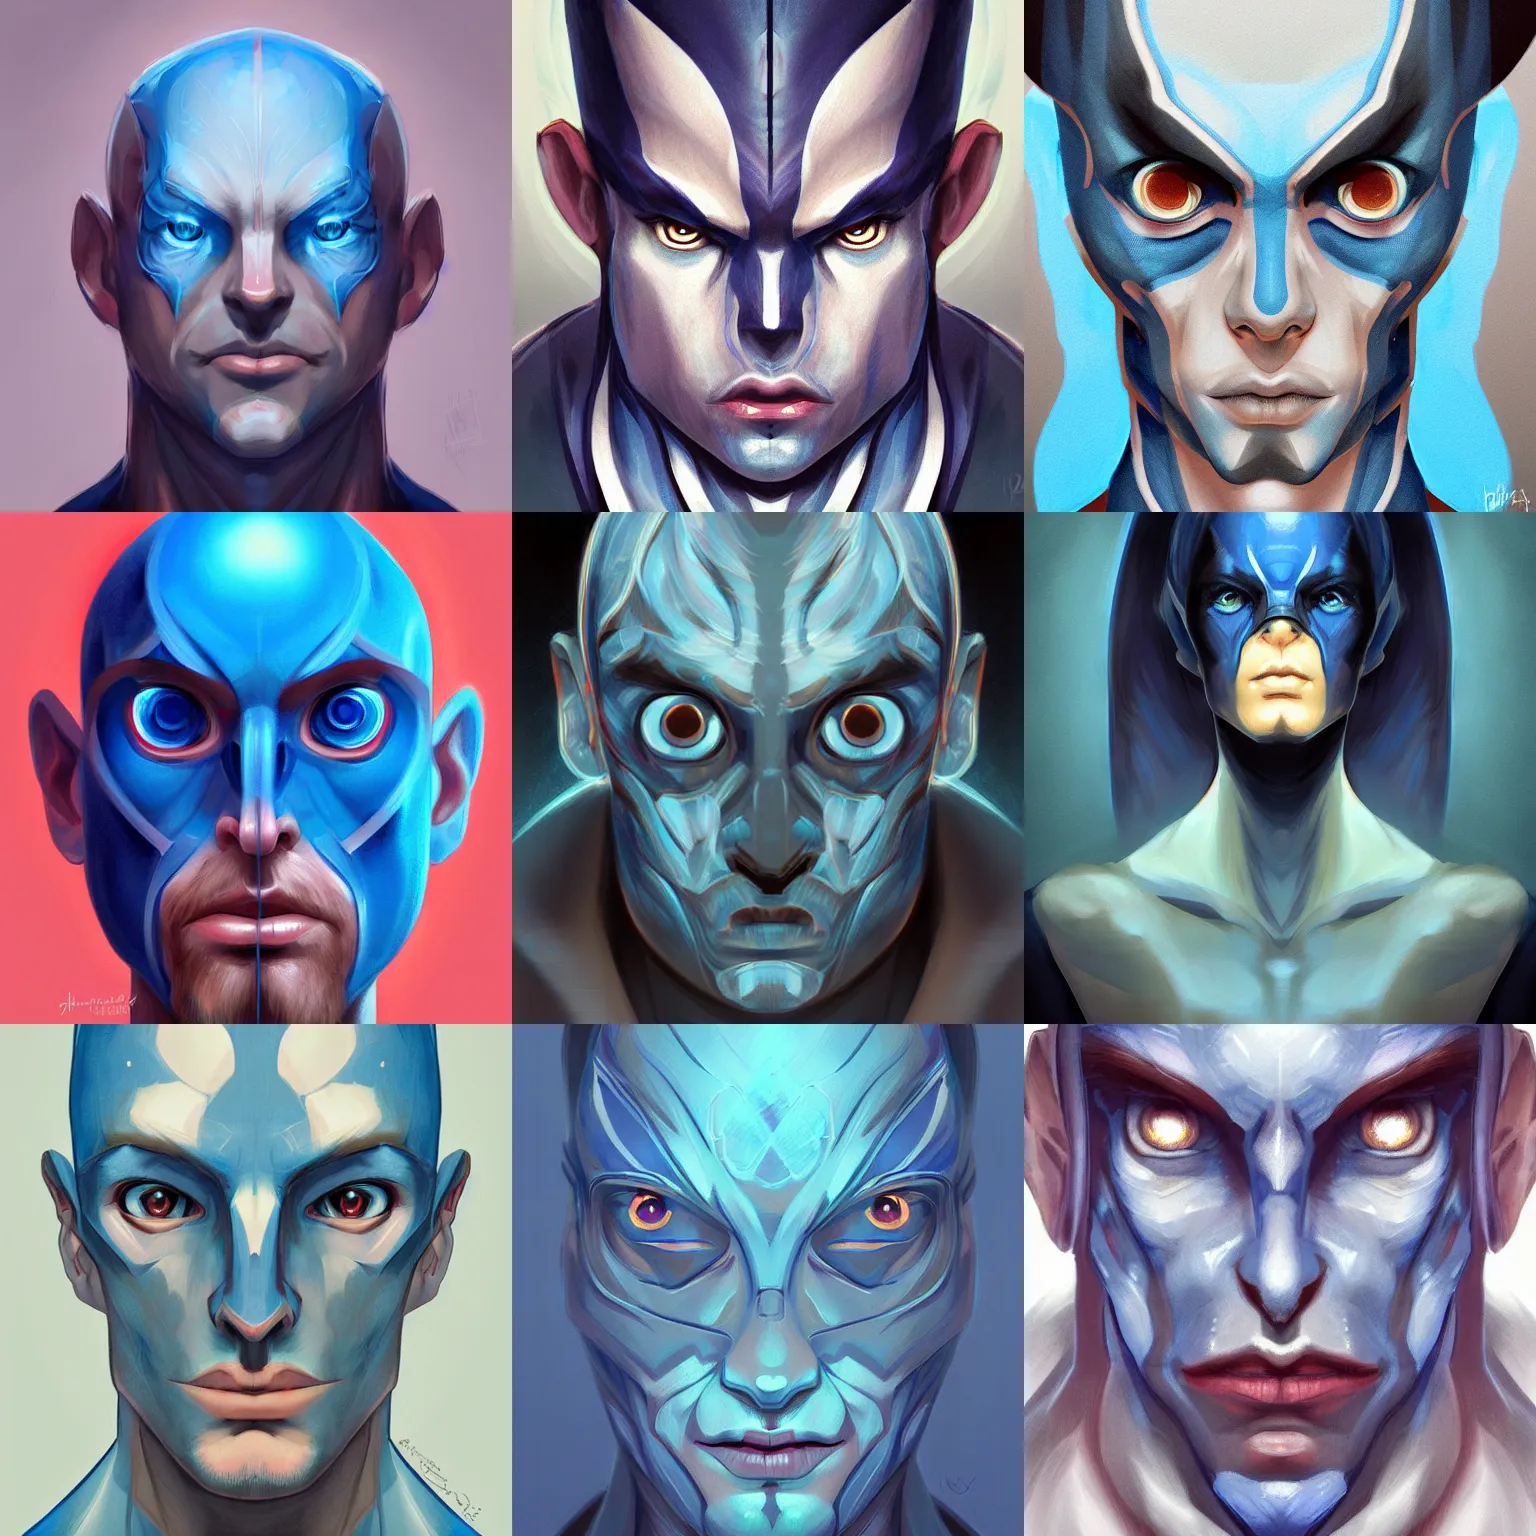 Prompt: symmetrical character concept portrait, blue fishman, digital painting, concept art, smooth, sharp focus, illustration, artgerm, wlop